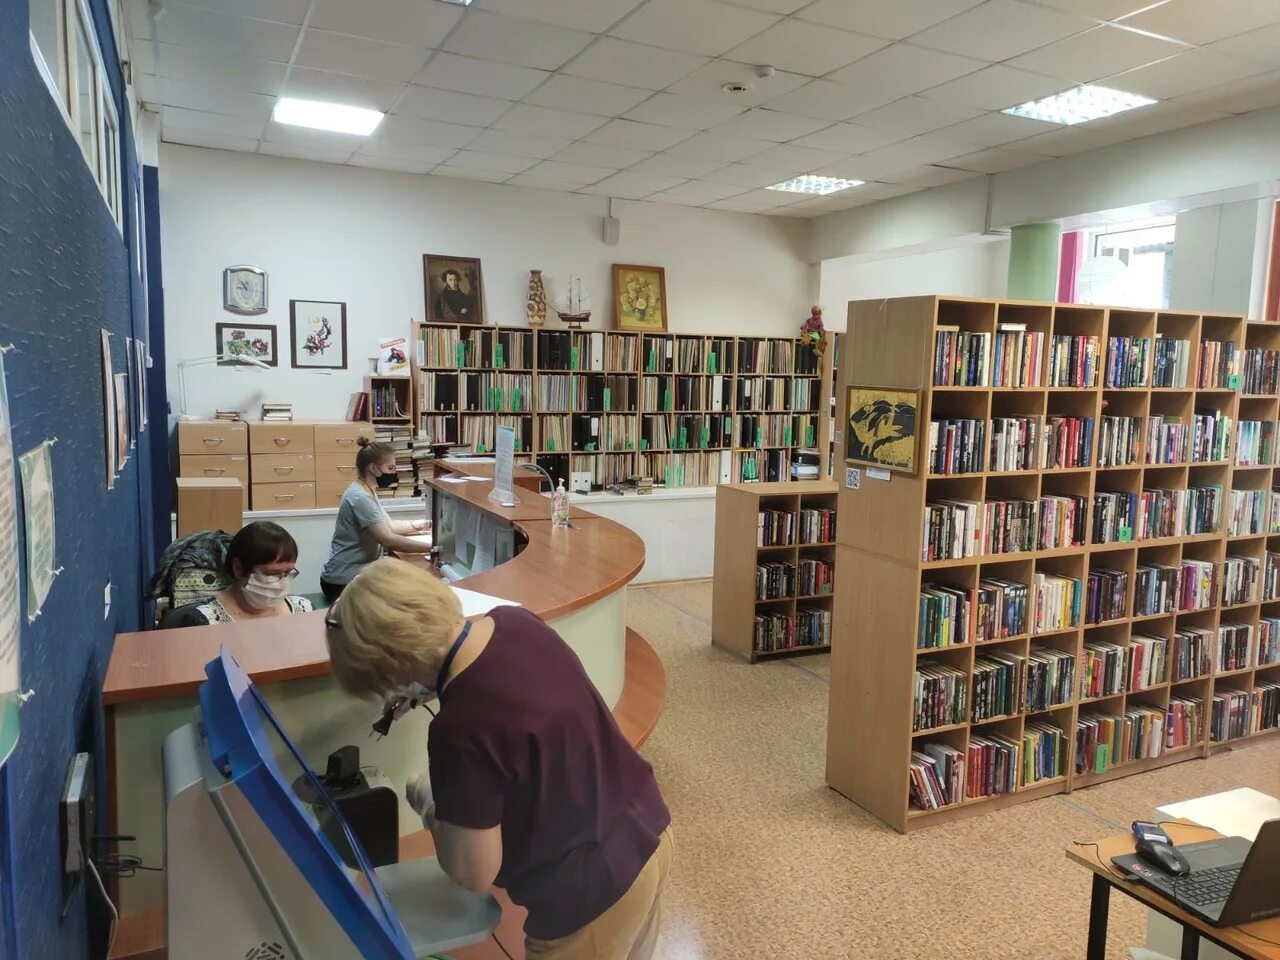 Где работает библиотека. Библиотека работает. Библиотека Новосибирск. Работники библиотеки. Работники библиотеки Новосибирска.